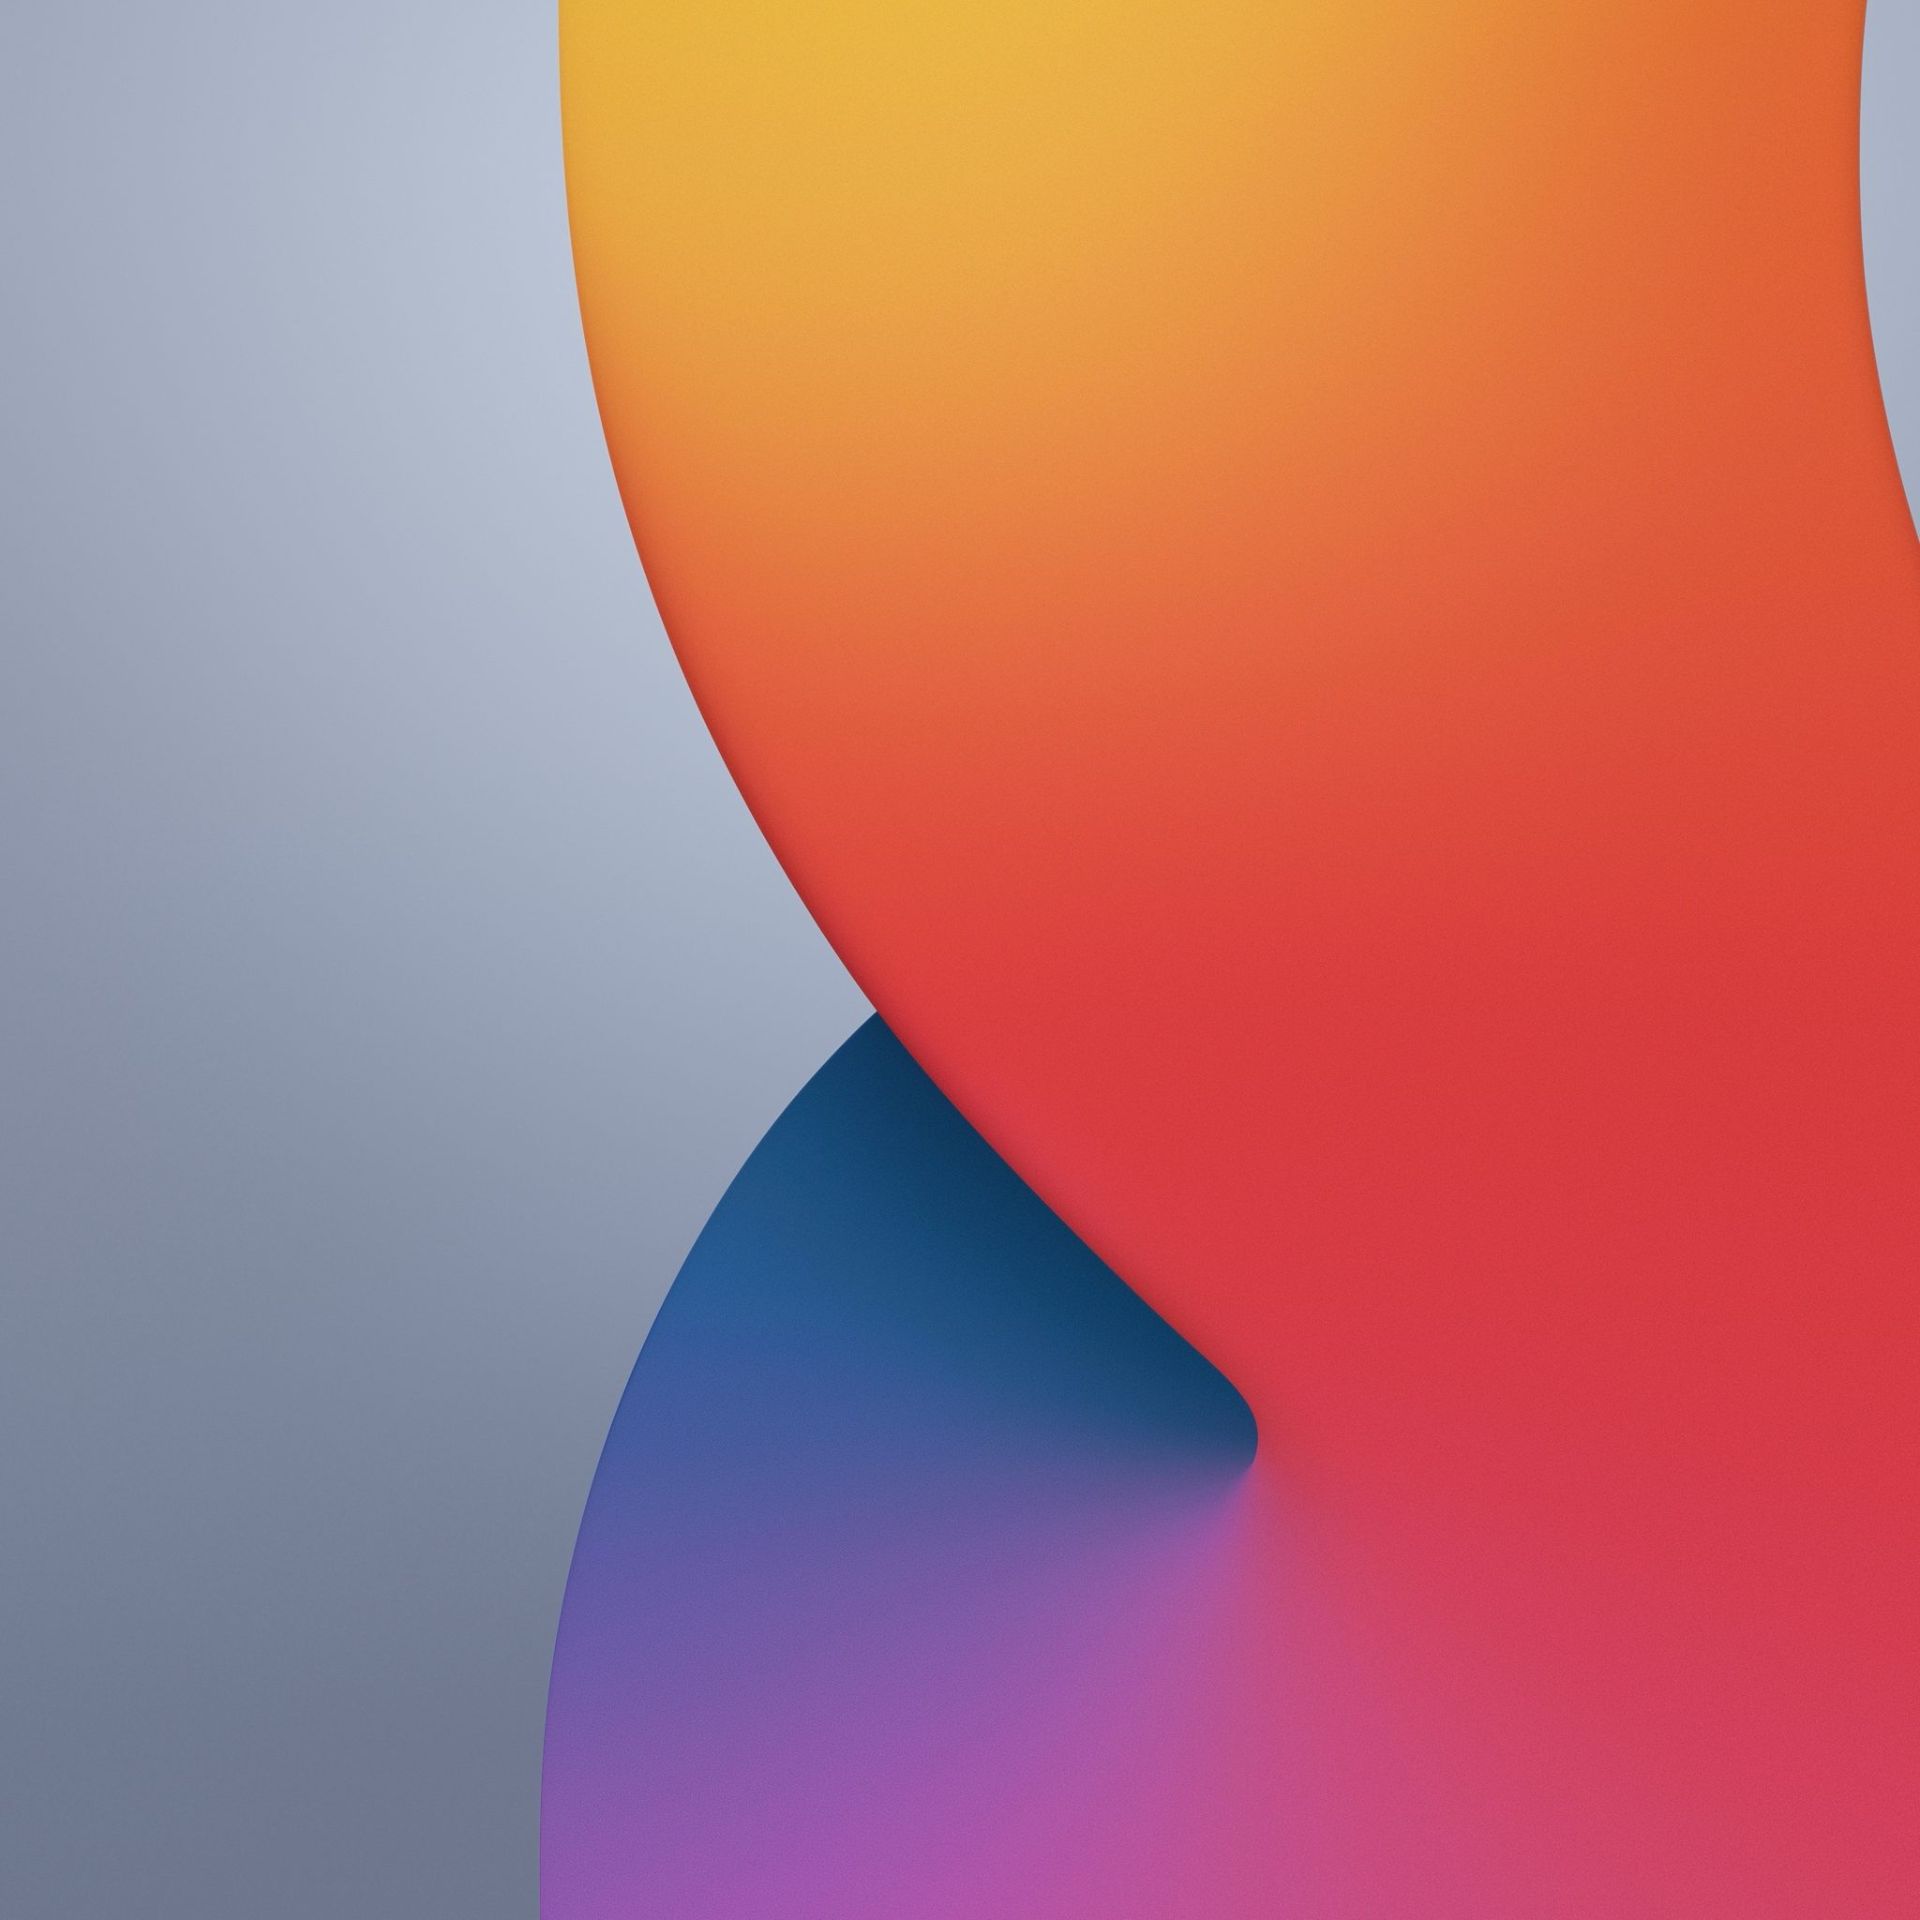 والپیپر iOS 14 حالت روشن رنگ آبی و خاکستری و نارنجی